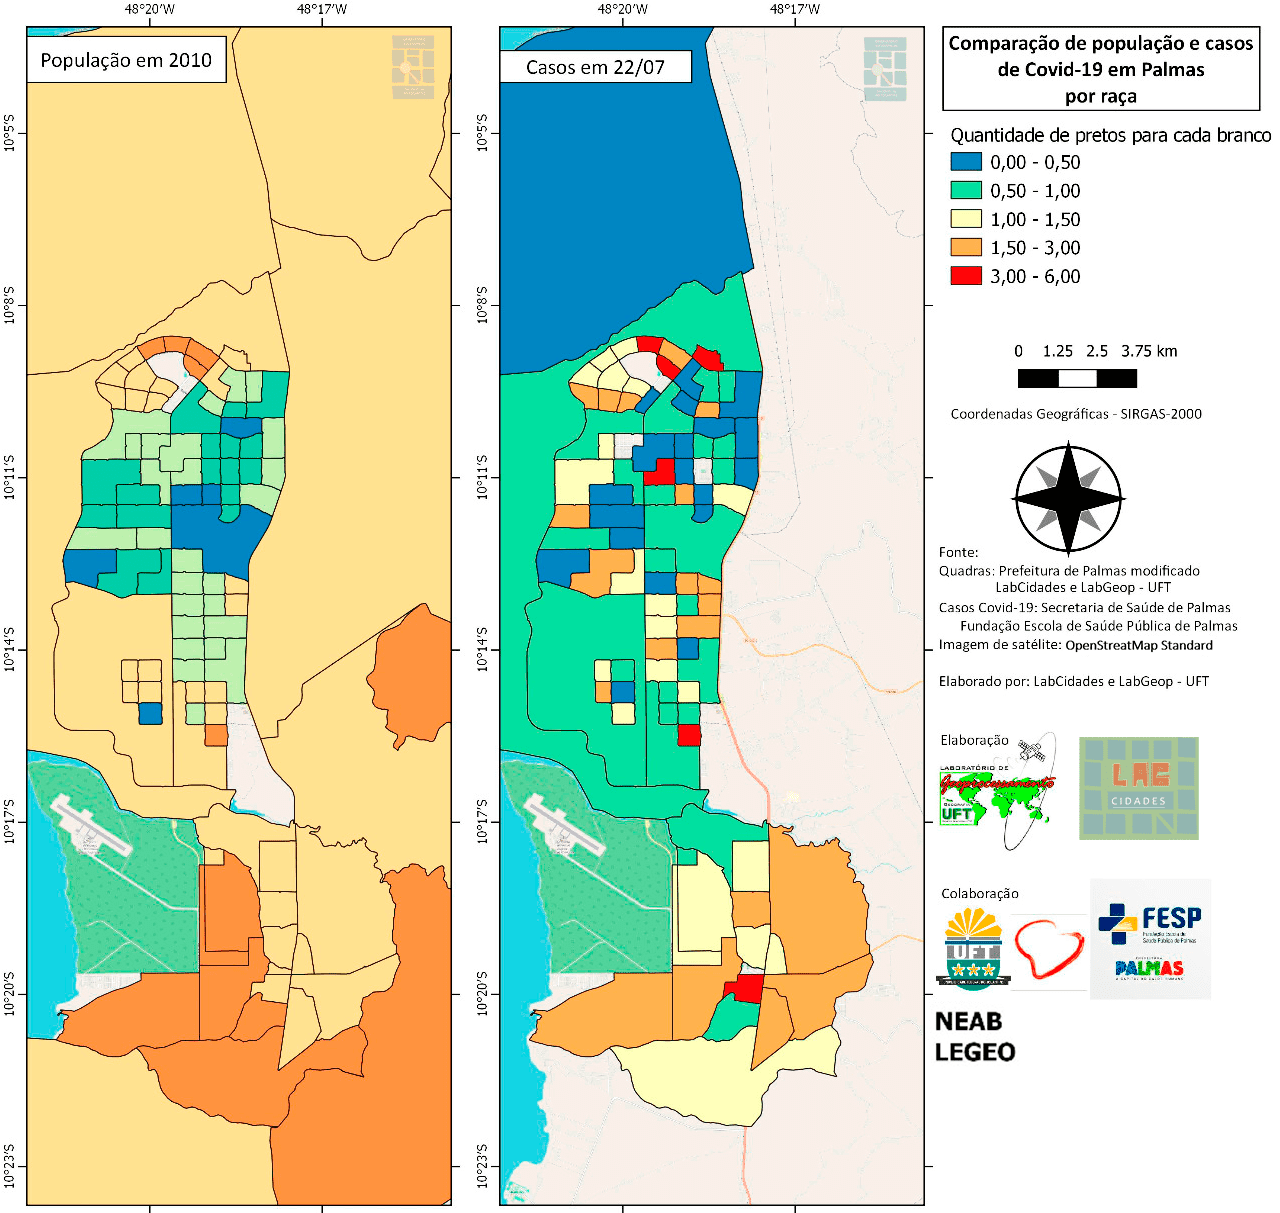 Comparação população e casos de COVID-19 em Palmas por Raça